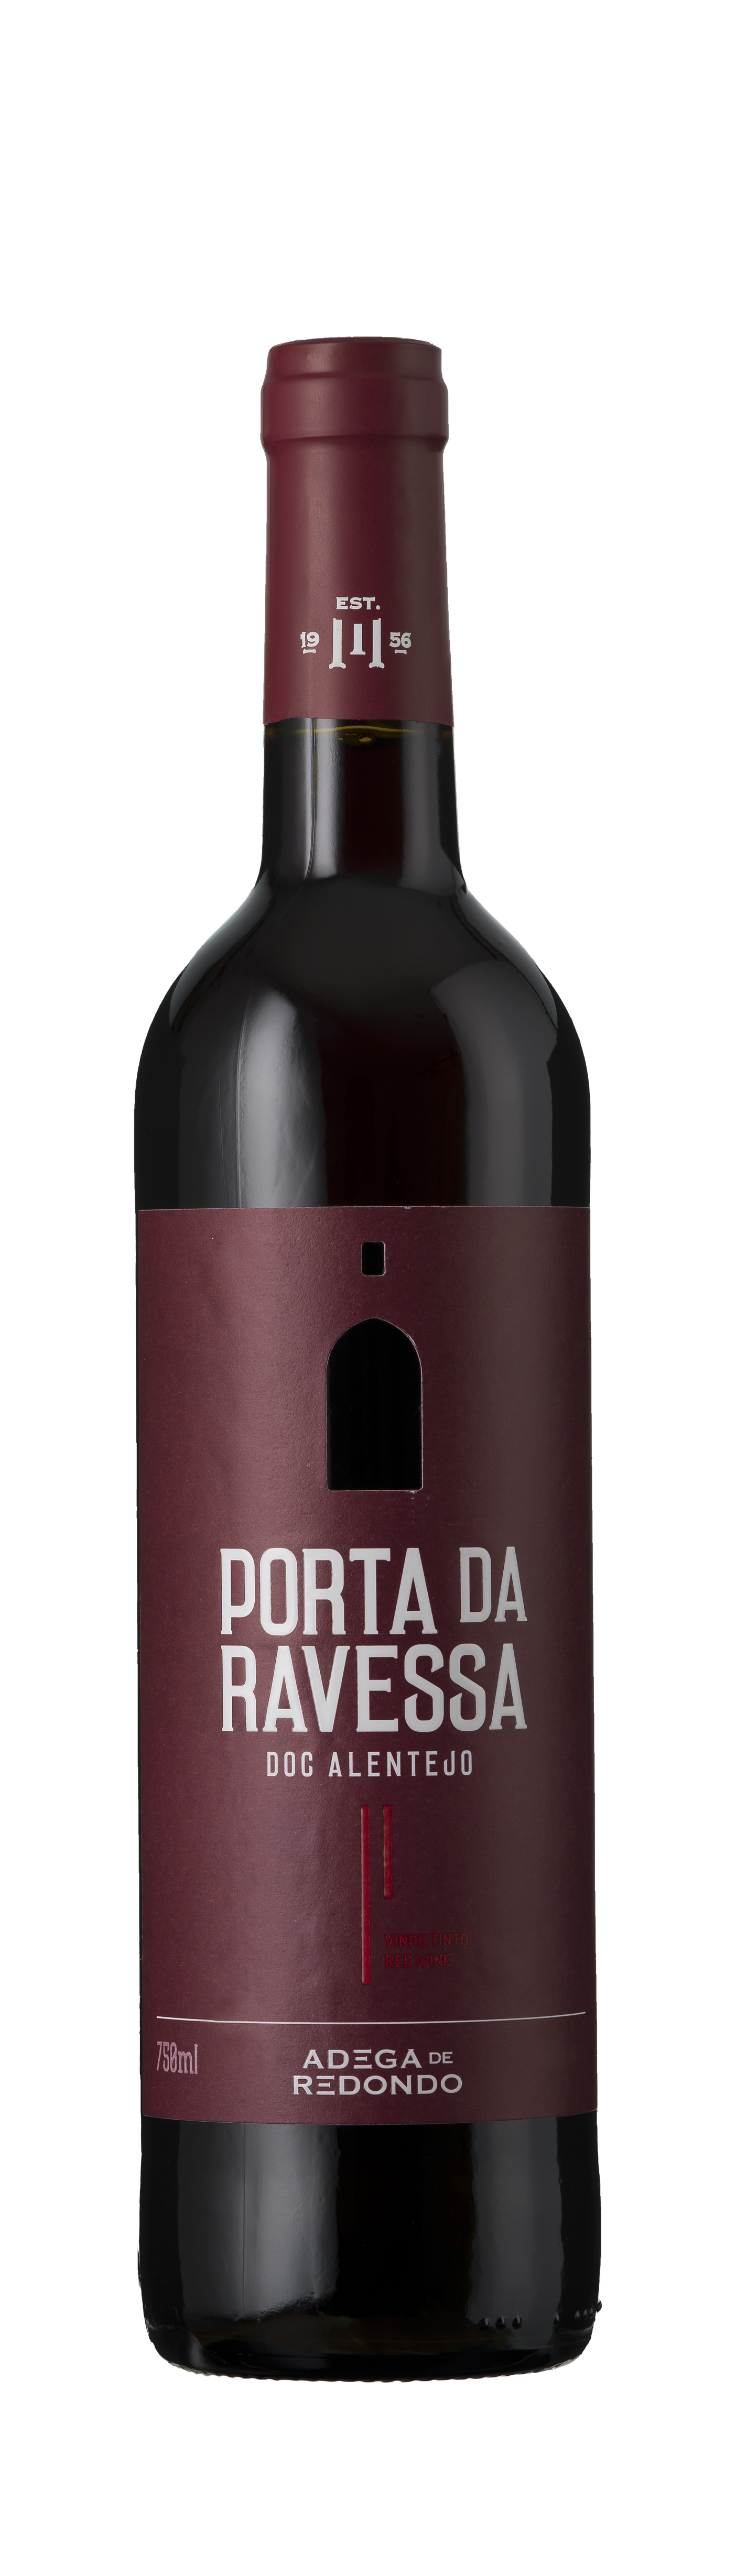 Adega de Redondo, DOC Ravessa Alliance Alentejo, - da Tinto, 2020 Wine Portugal, Porta